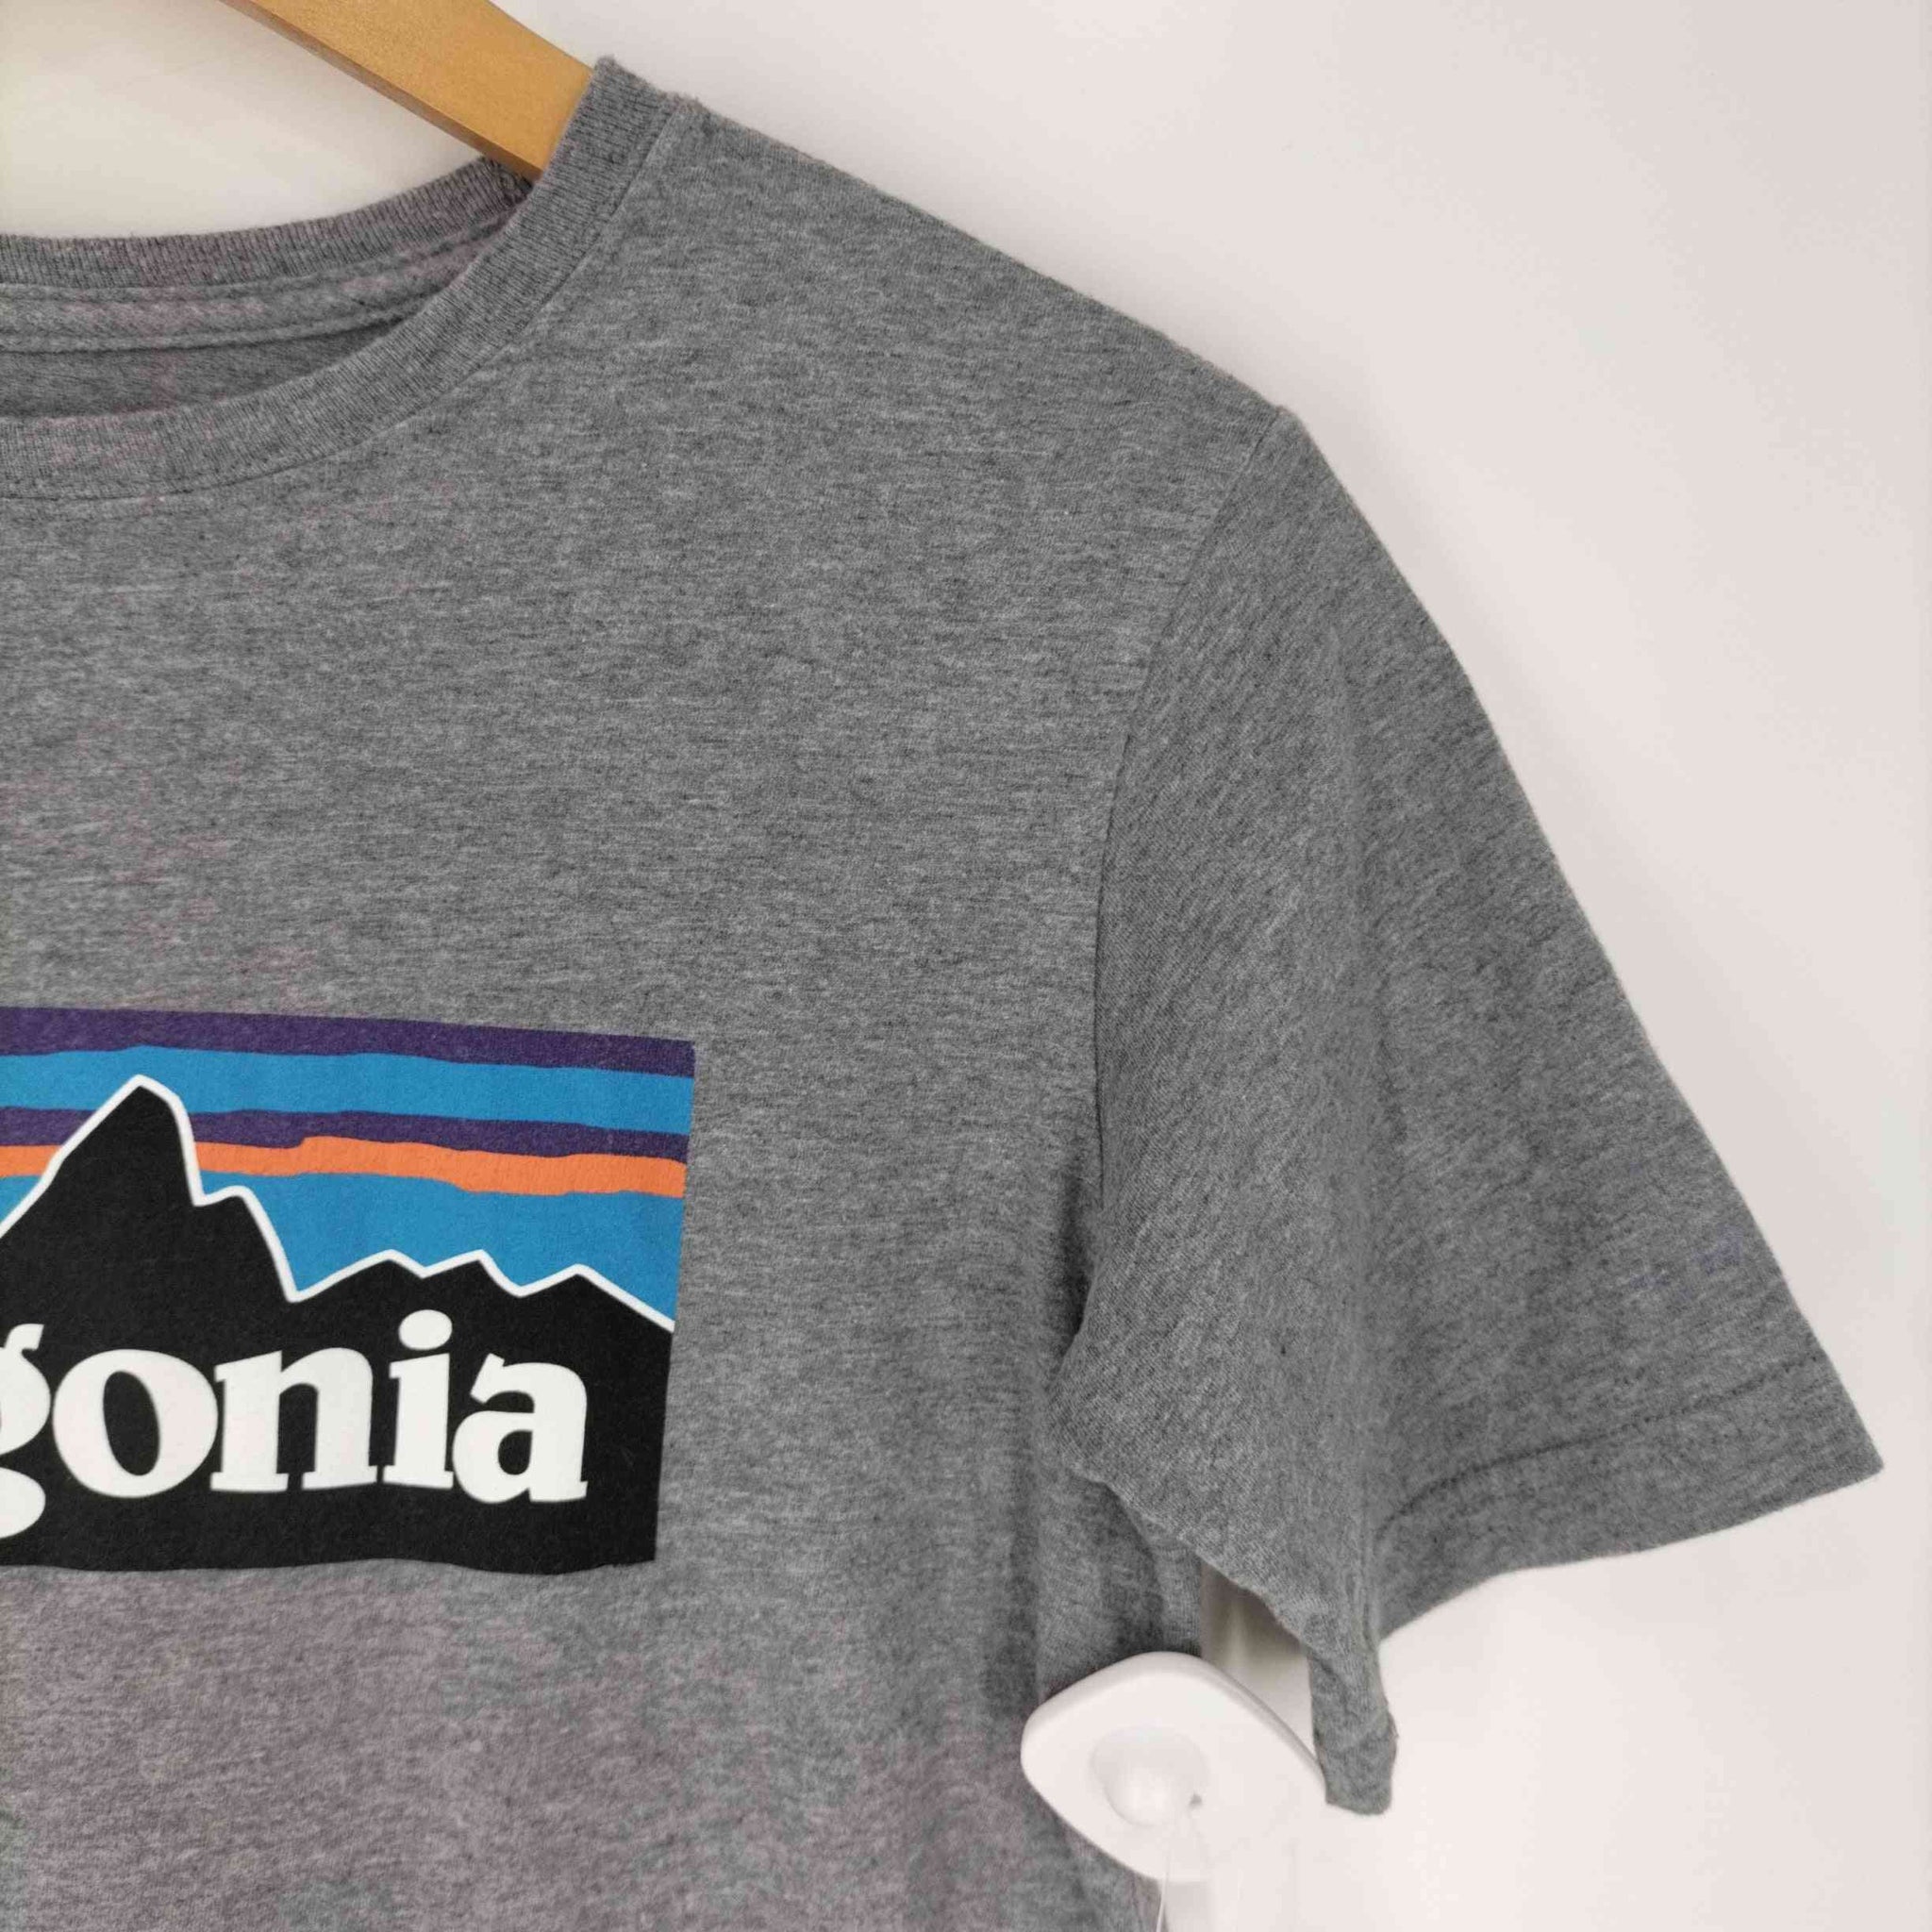 patagonia(パタゴニア)キッズ・リジェネラティブ・オーガニック・サーティファイド・コットン・P-6ロゴ・Tシャツ